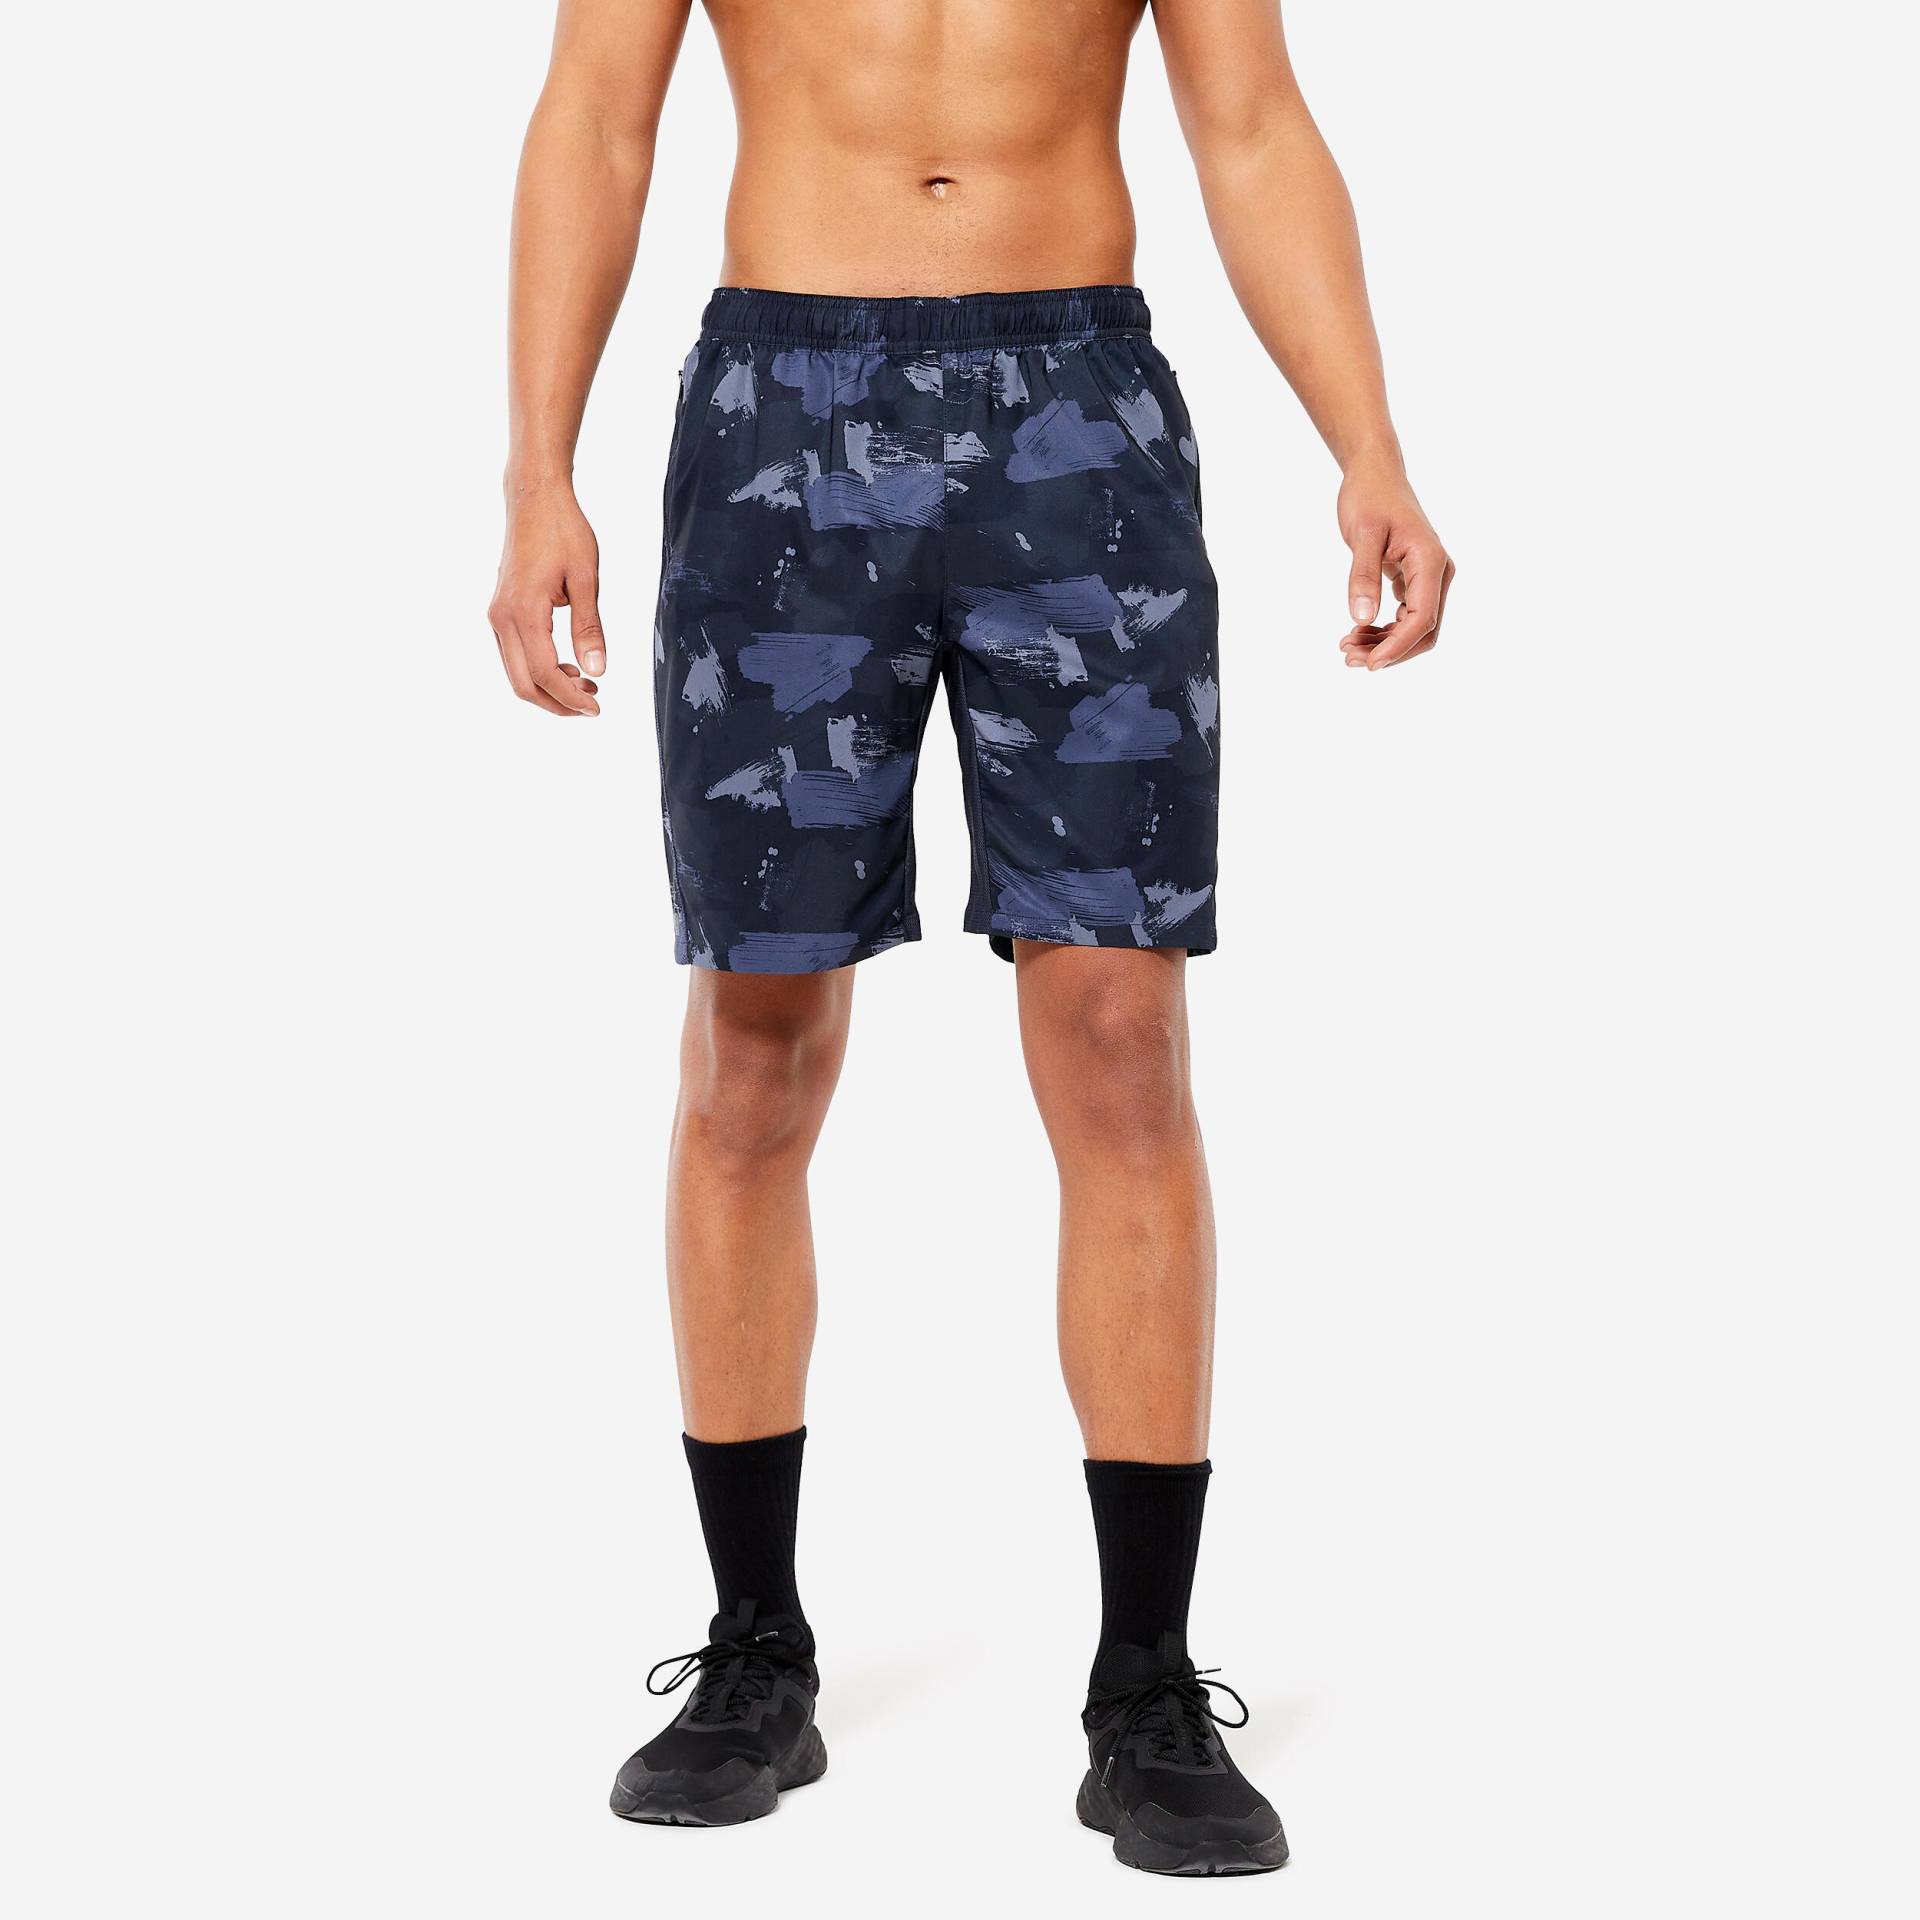 Shorts Herren Fitness Cardio Essential atmungsaktiv Reissverschlusstaschen - blau camouflage von Domyos